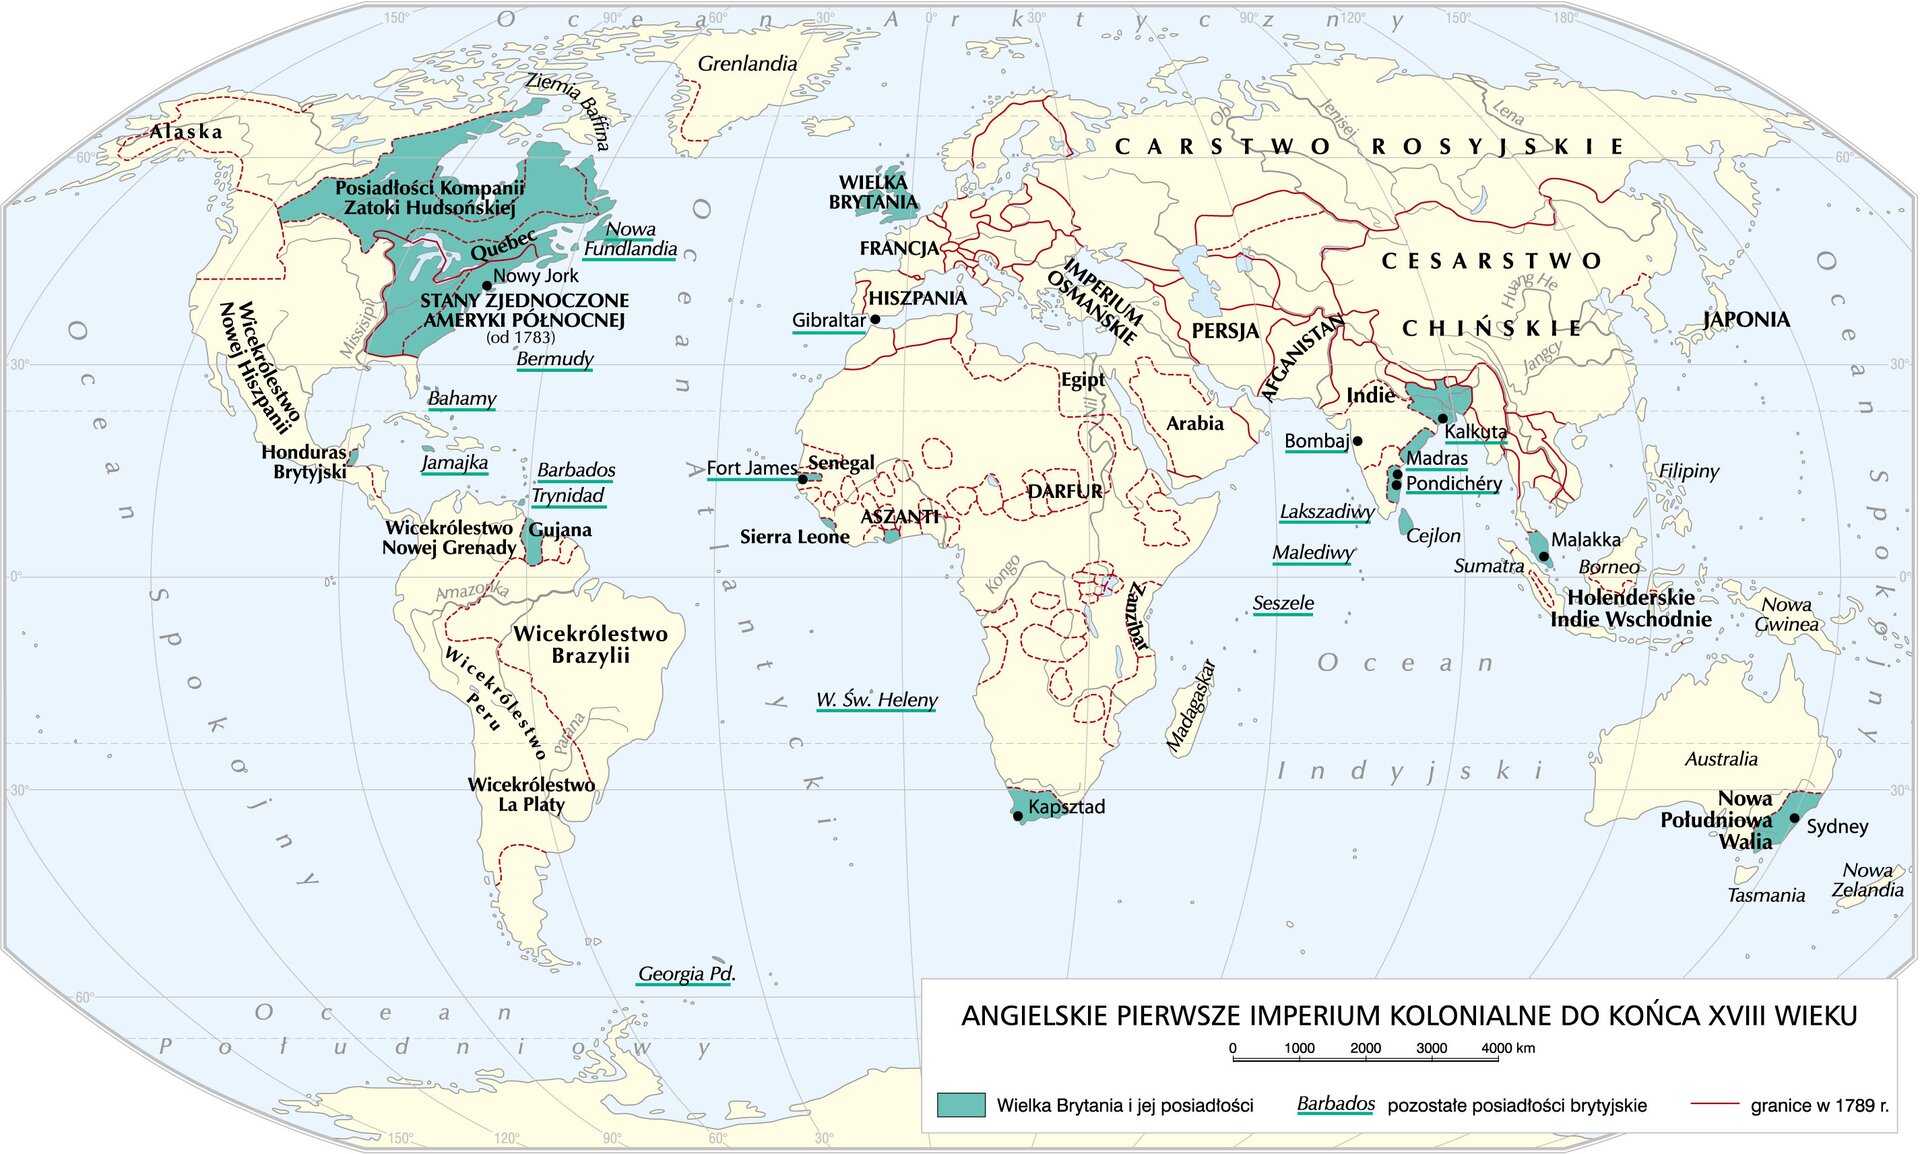 Mapa przedstawia angielskie imperium kolonialne do końca osiemnastego wieku. Posiadłościami Wielkiej Brytanii były Posiadłości Kompanii Zatoki Hudsońskiej, Nowa Fundlandia, Bermudy, Stany Zjednoczone Ameryki Północnej od 1783 roku, Bahamy, Jamajka, Barbados, Trynidad, Gujana, Georgia Południowa, Wyspa Świętej Heleny, Kapsztad, Sierra Leone, Aszanti, Fort James, Senegal, Gibraltar, Seszele, Malediwy, Lakszadiwy, Bombaj, Kalkuta, Madras, Pondichery, Cejlon, Malakka, Nowa Południowa Walia z Sydney.